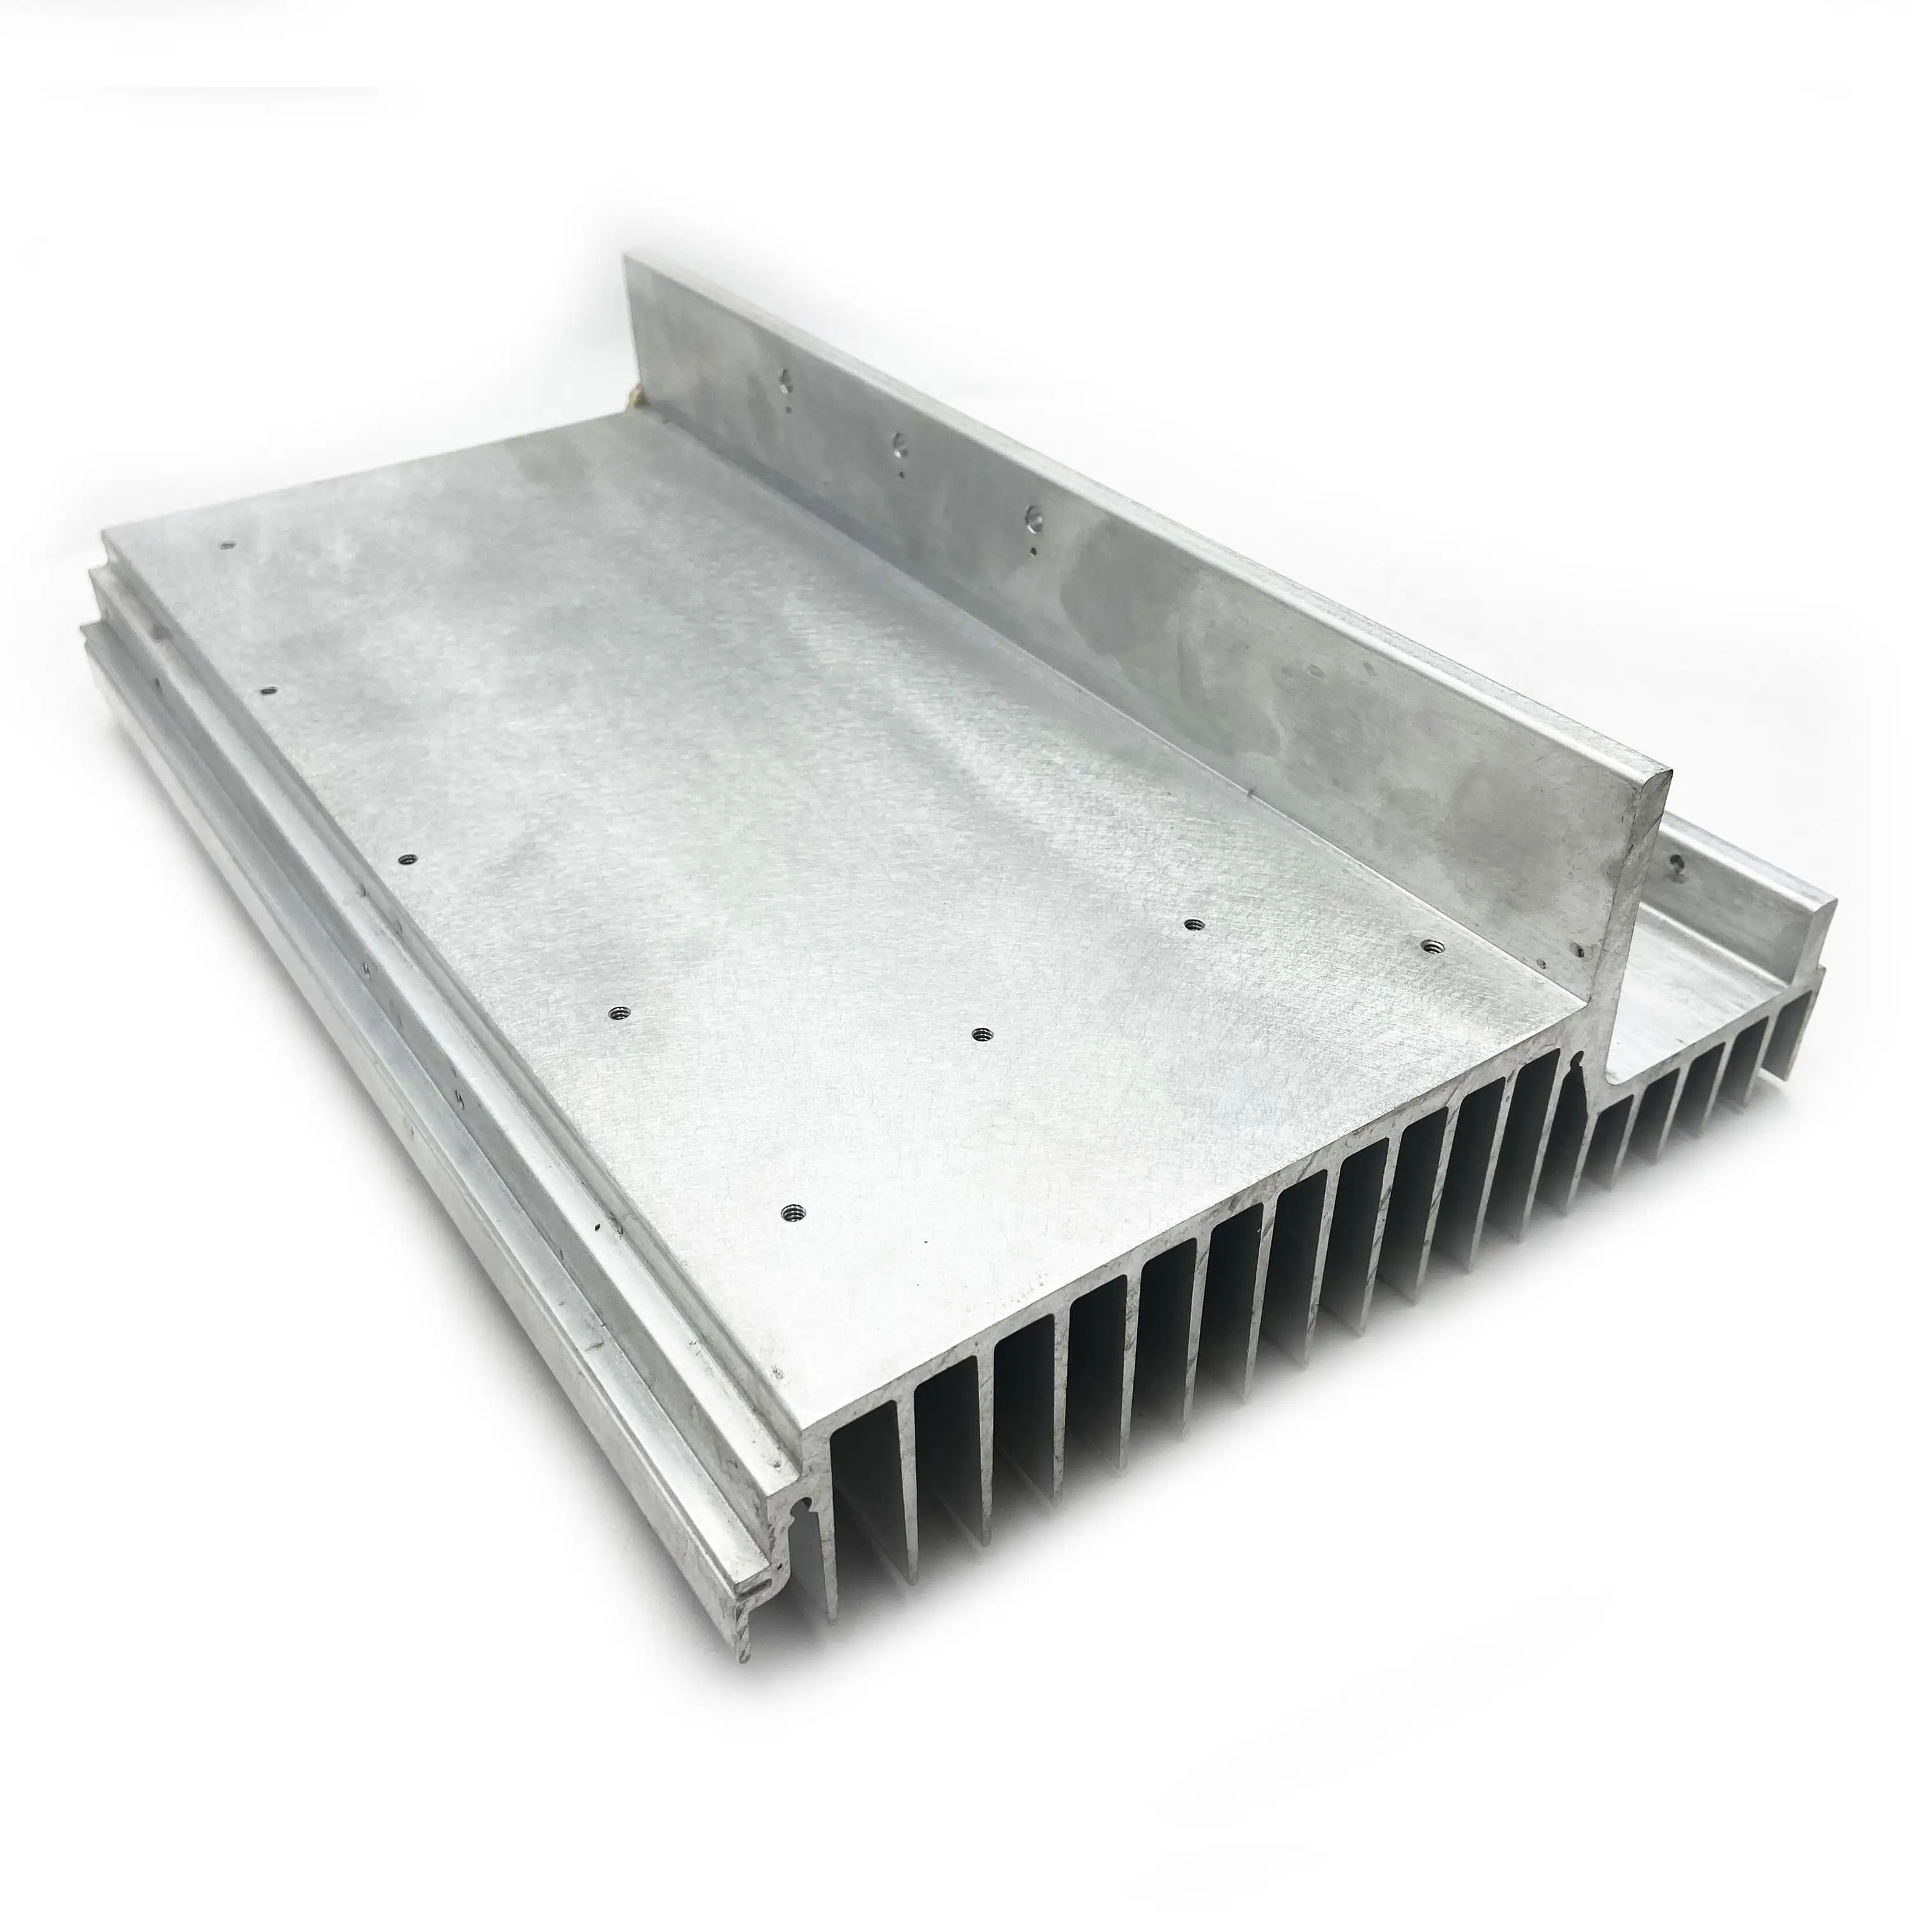 알루미늄 압출 제품 공장 맞춤형 6000 시리즈 양극 산화 처리 알루미늄 압출 방열판